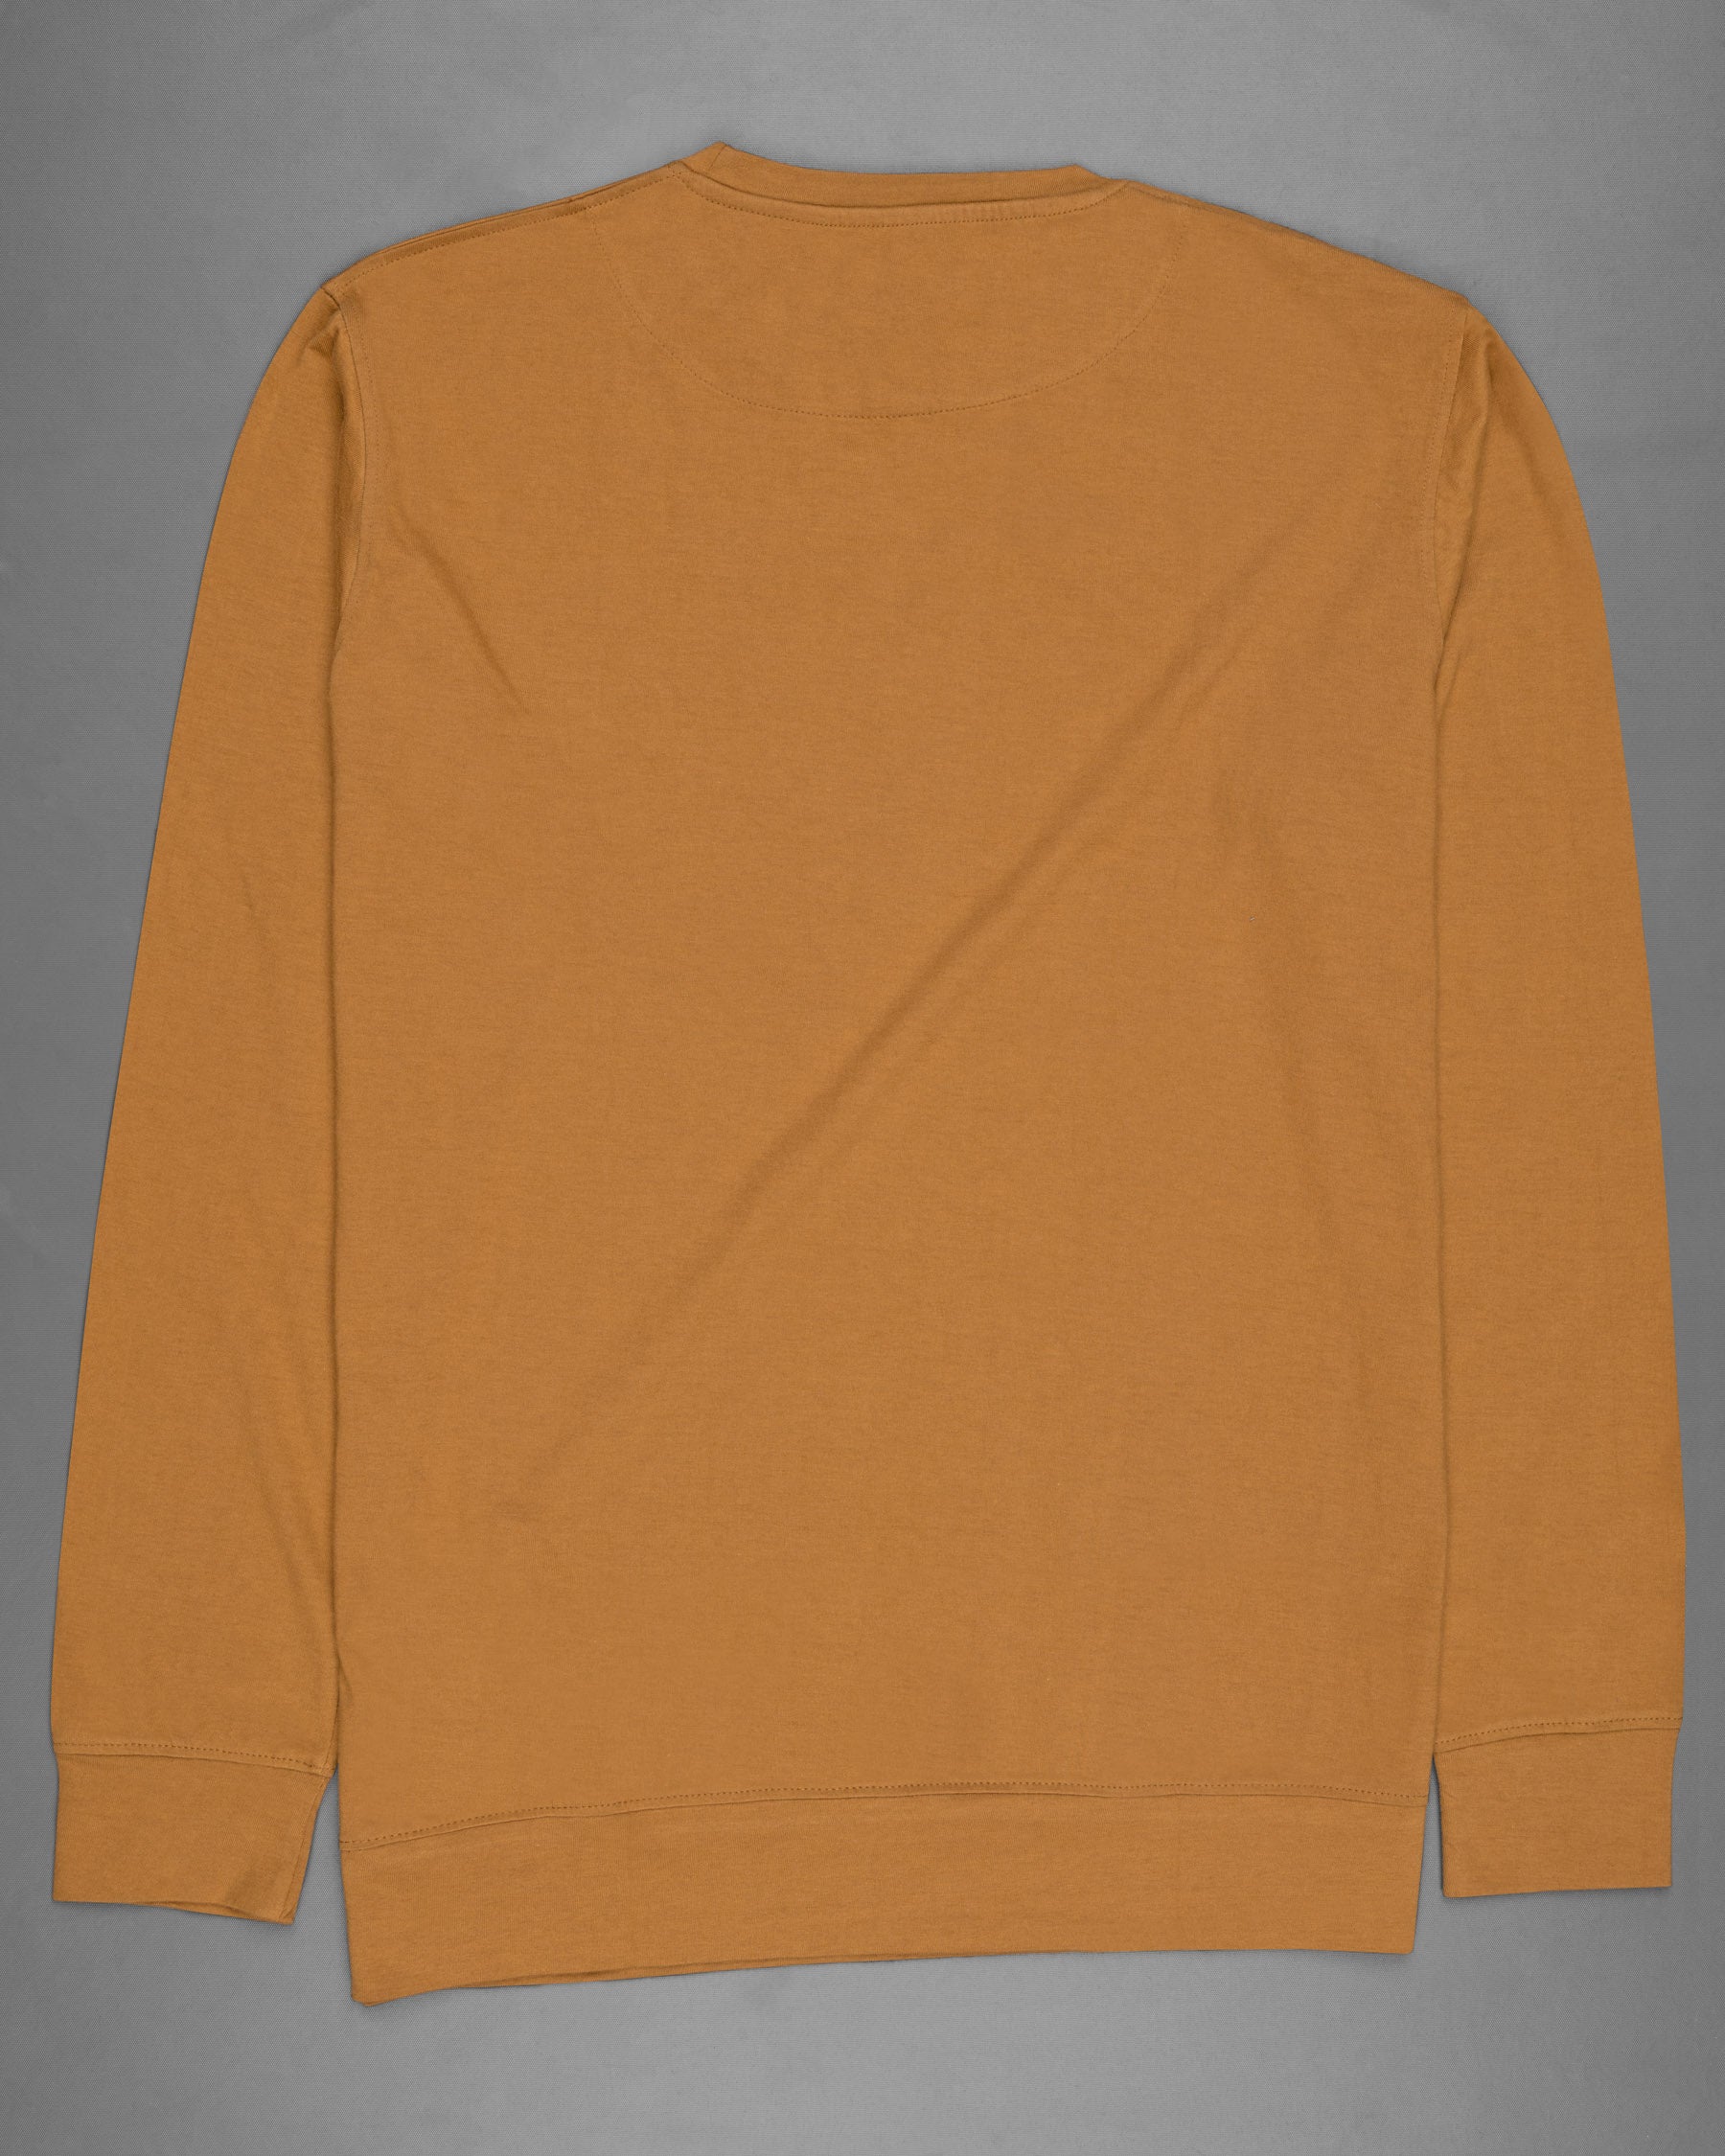 Rodeo Dust Full Sleeve Premium Cotton Jersey Sweatshirt TS458-S, TS458-M, TS458-L, TS458-XL, TS458-XXL